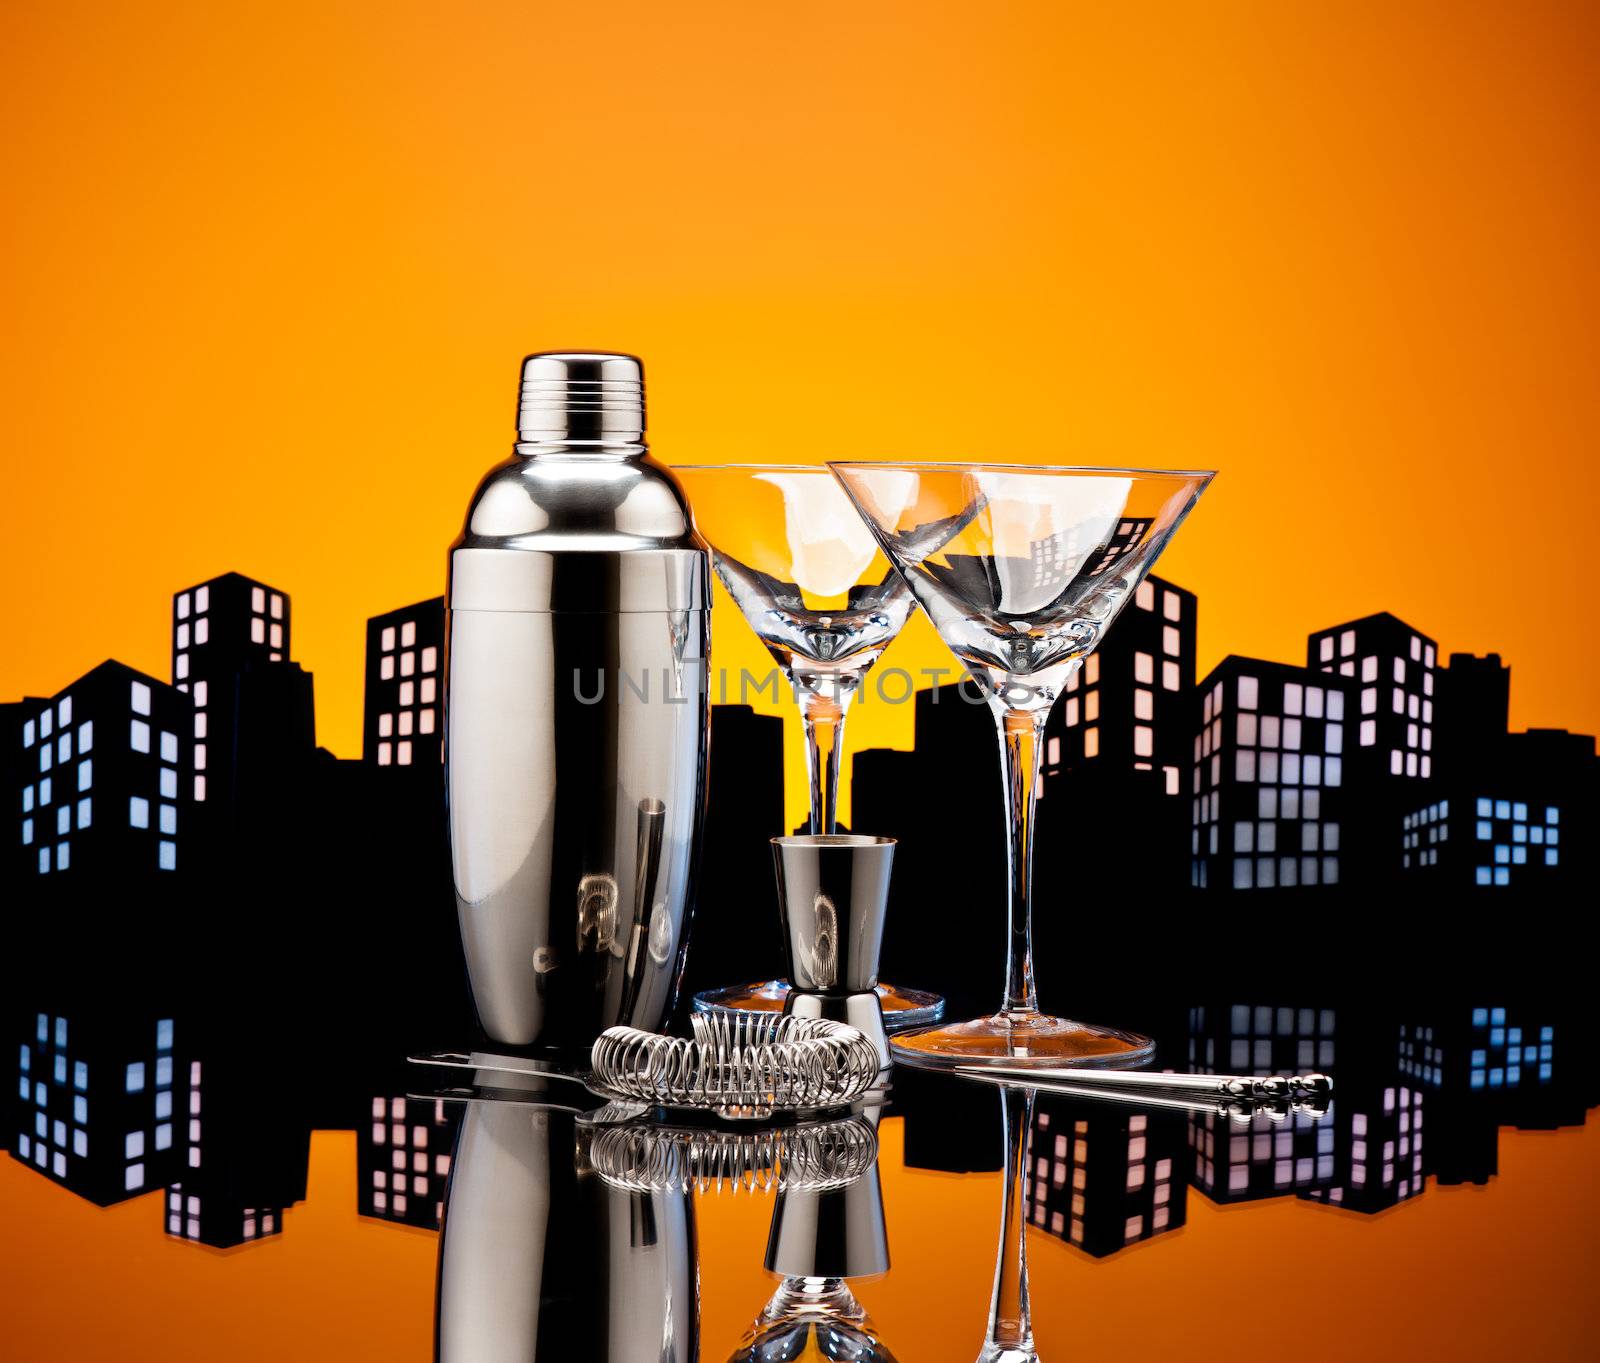 Metropolis Bartender tools by 3523Studio